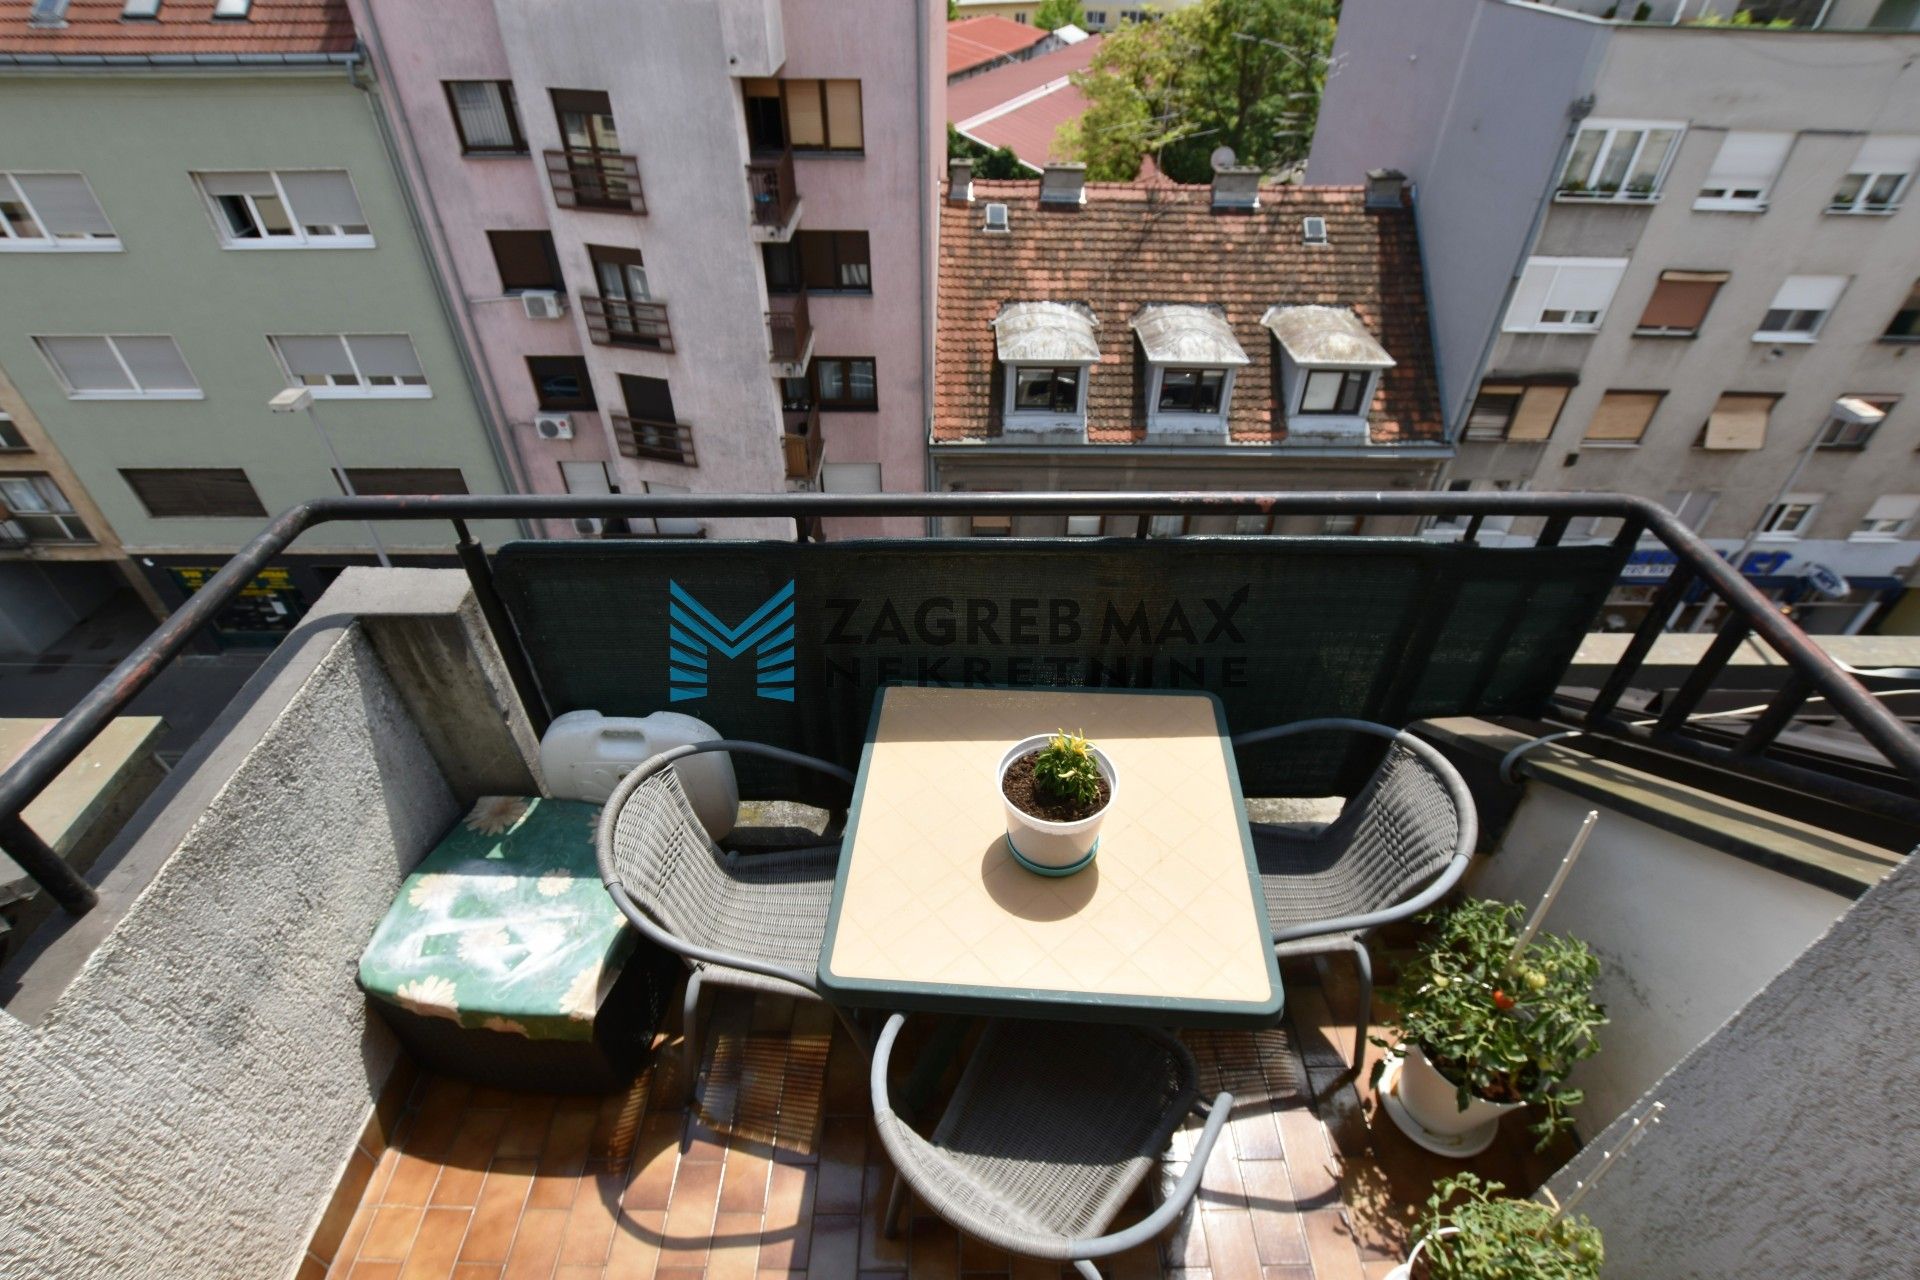 Zagreb - TREŠNJEVKA Prostran 4soban stan 99 m2, 5. kat, odlična lokacija, balkon, spremište, BEZ PROVIZIJE